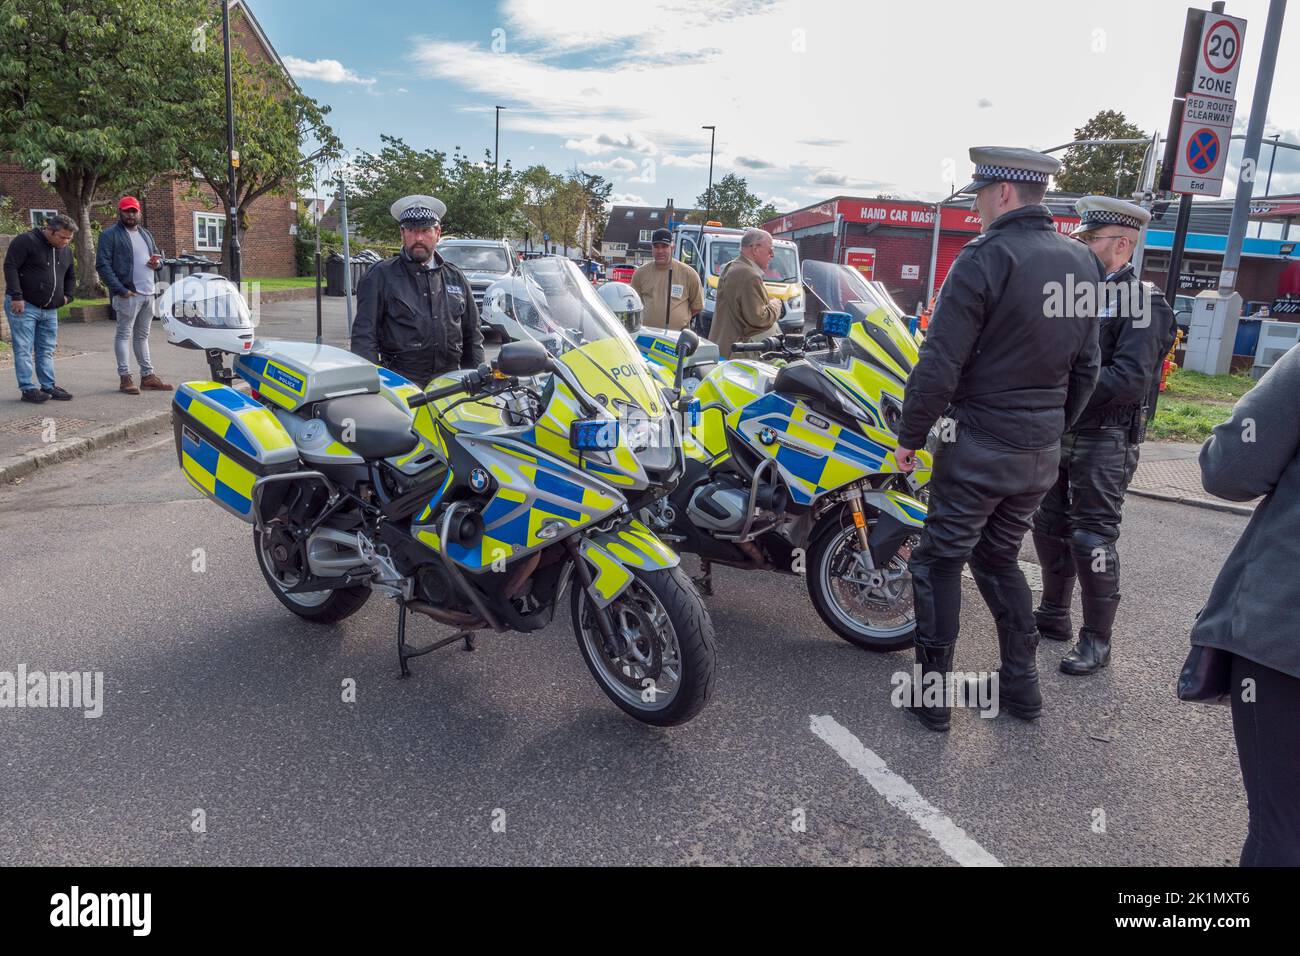 Motociclette e ufficiali della polizia metropolitana a Hounslow, Regno Unito. Foto Stock